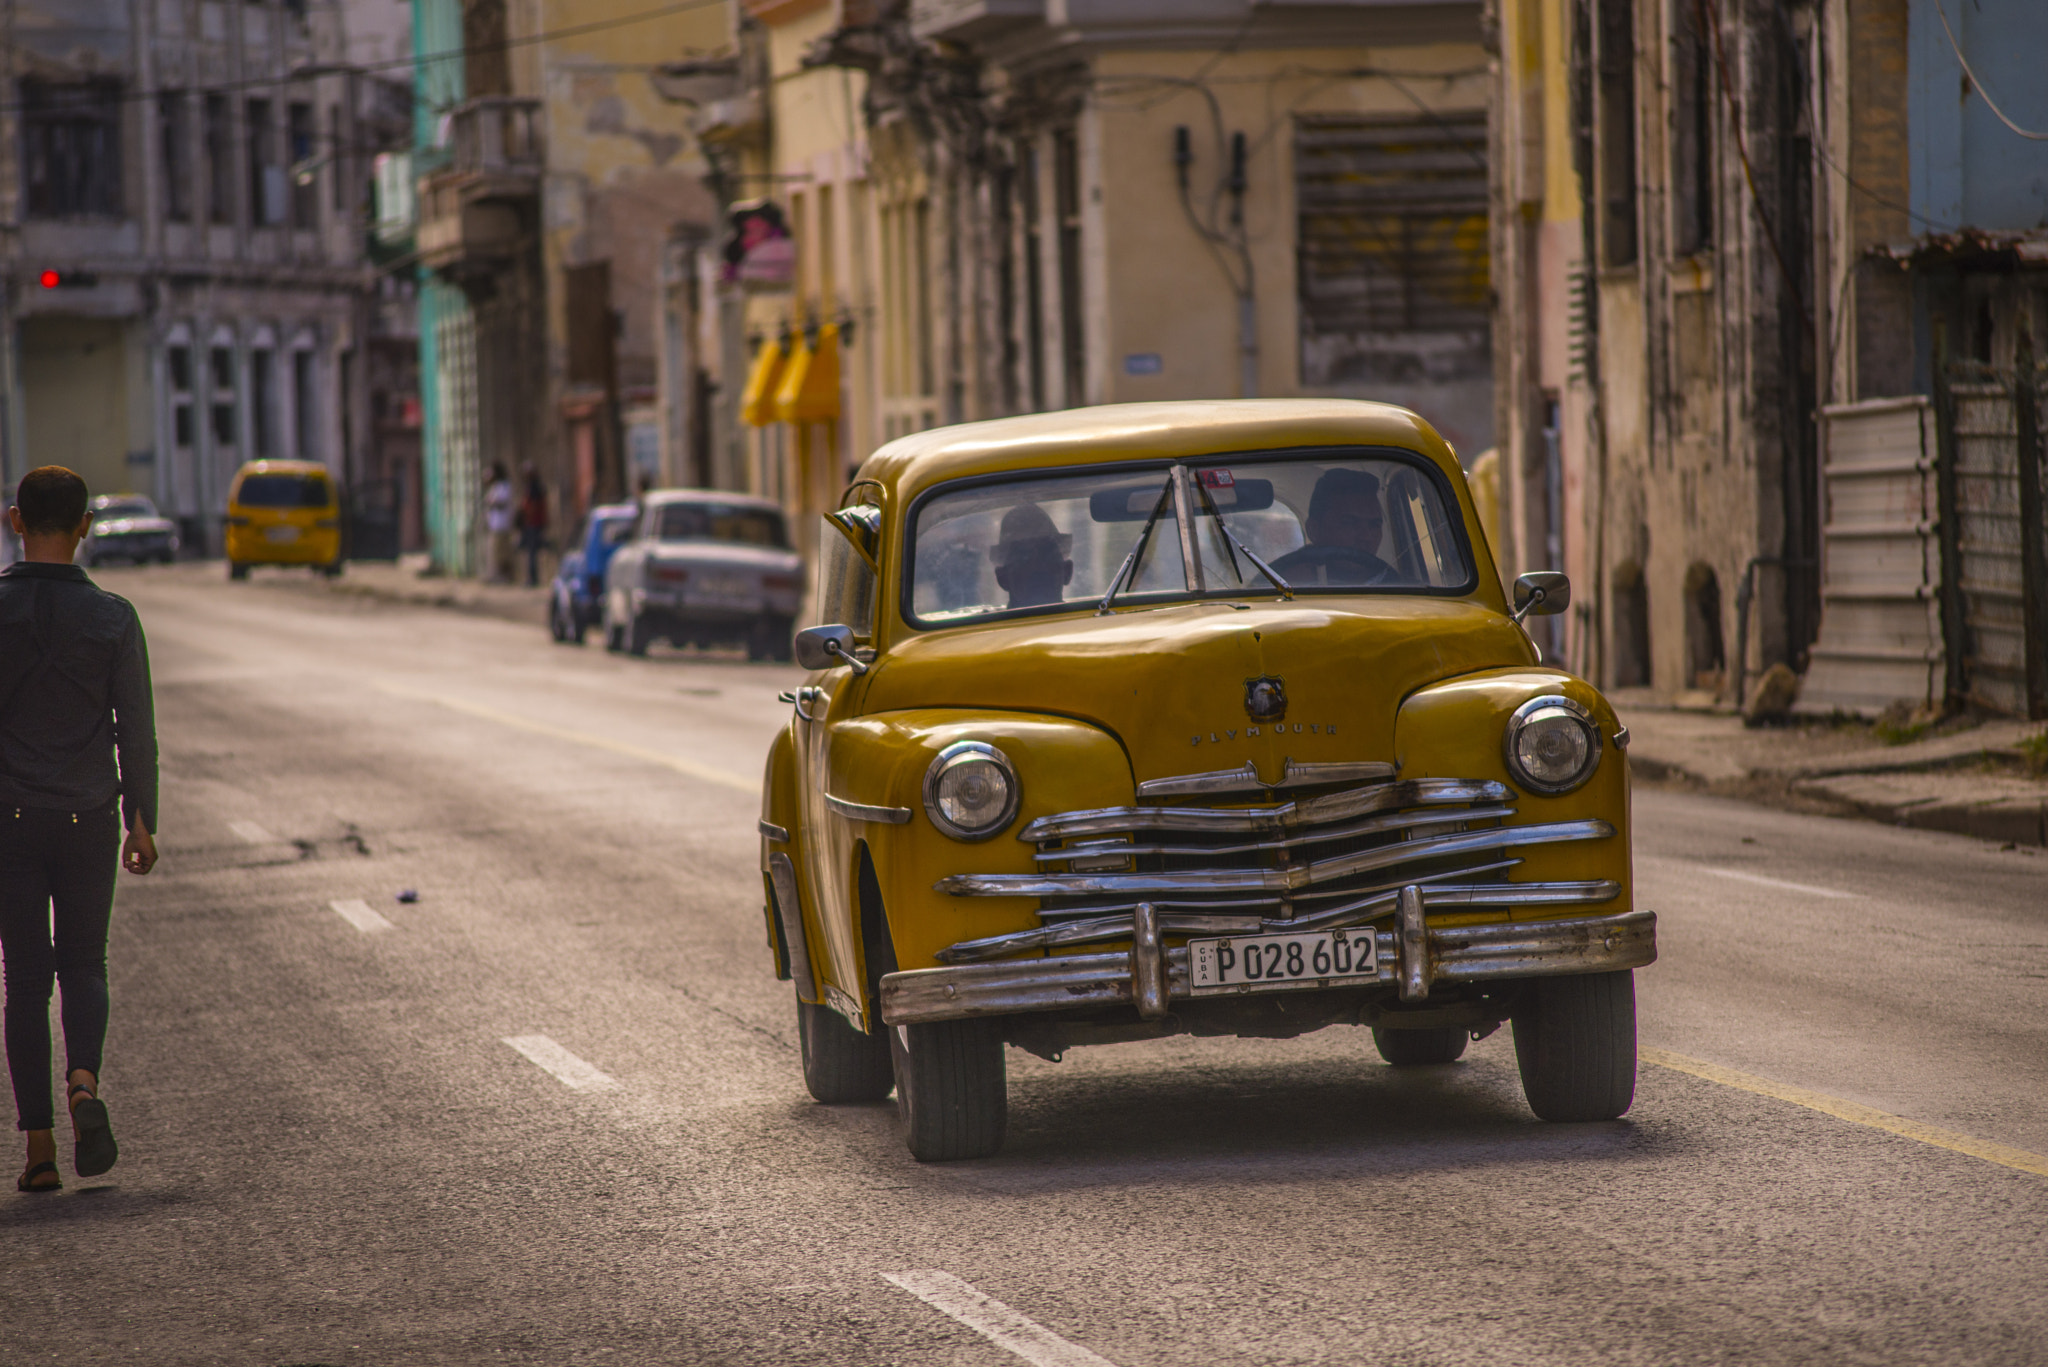 AF Zoom-Nikkor 75-240mm f/4.5-5.6D sample photo. Cuba car photography